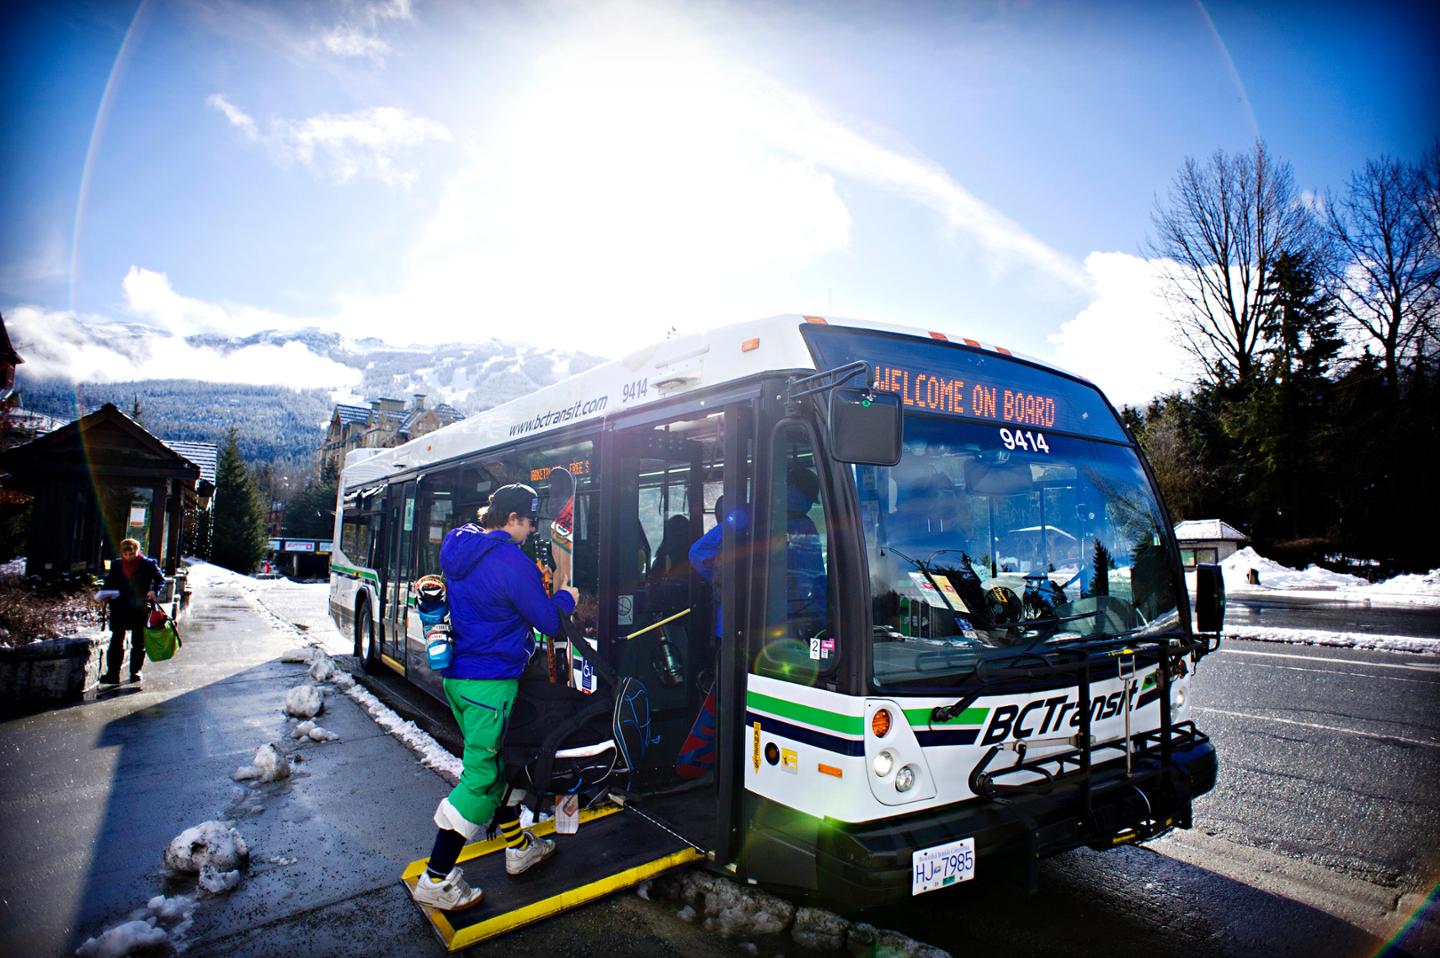 BC Transit in Whistler